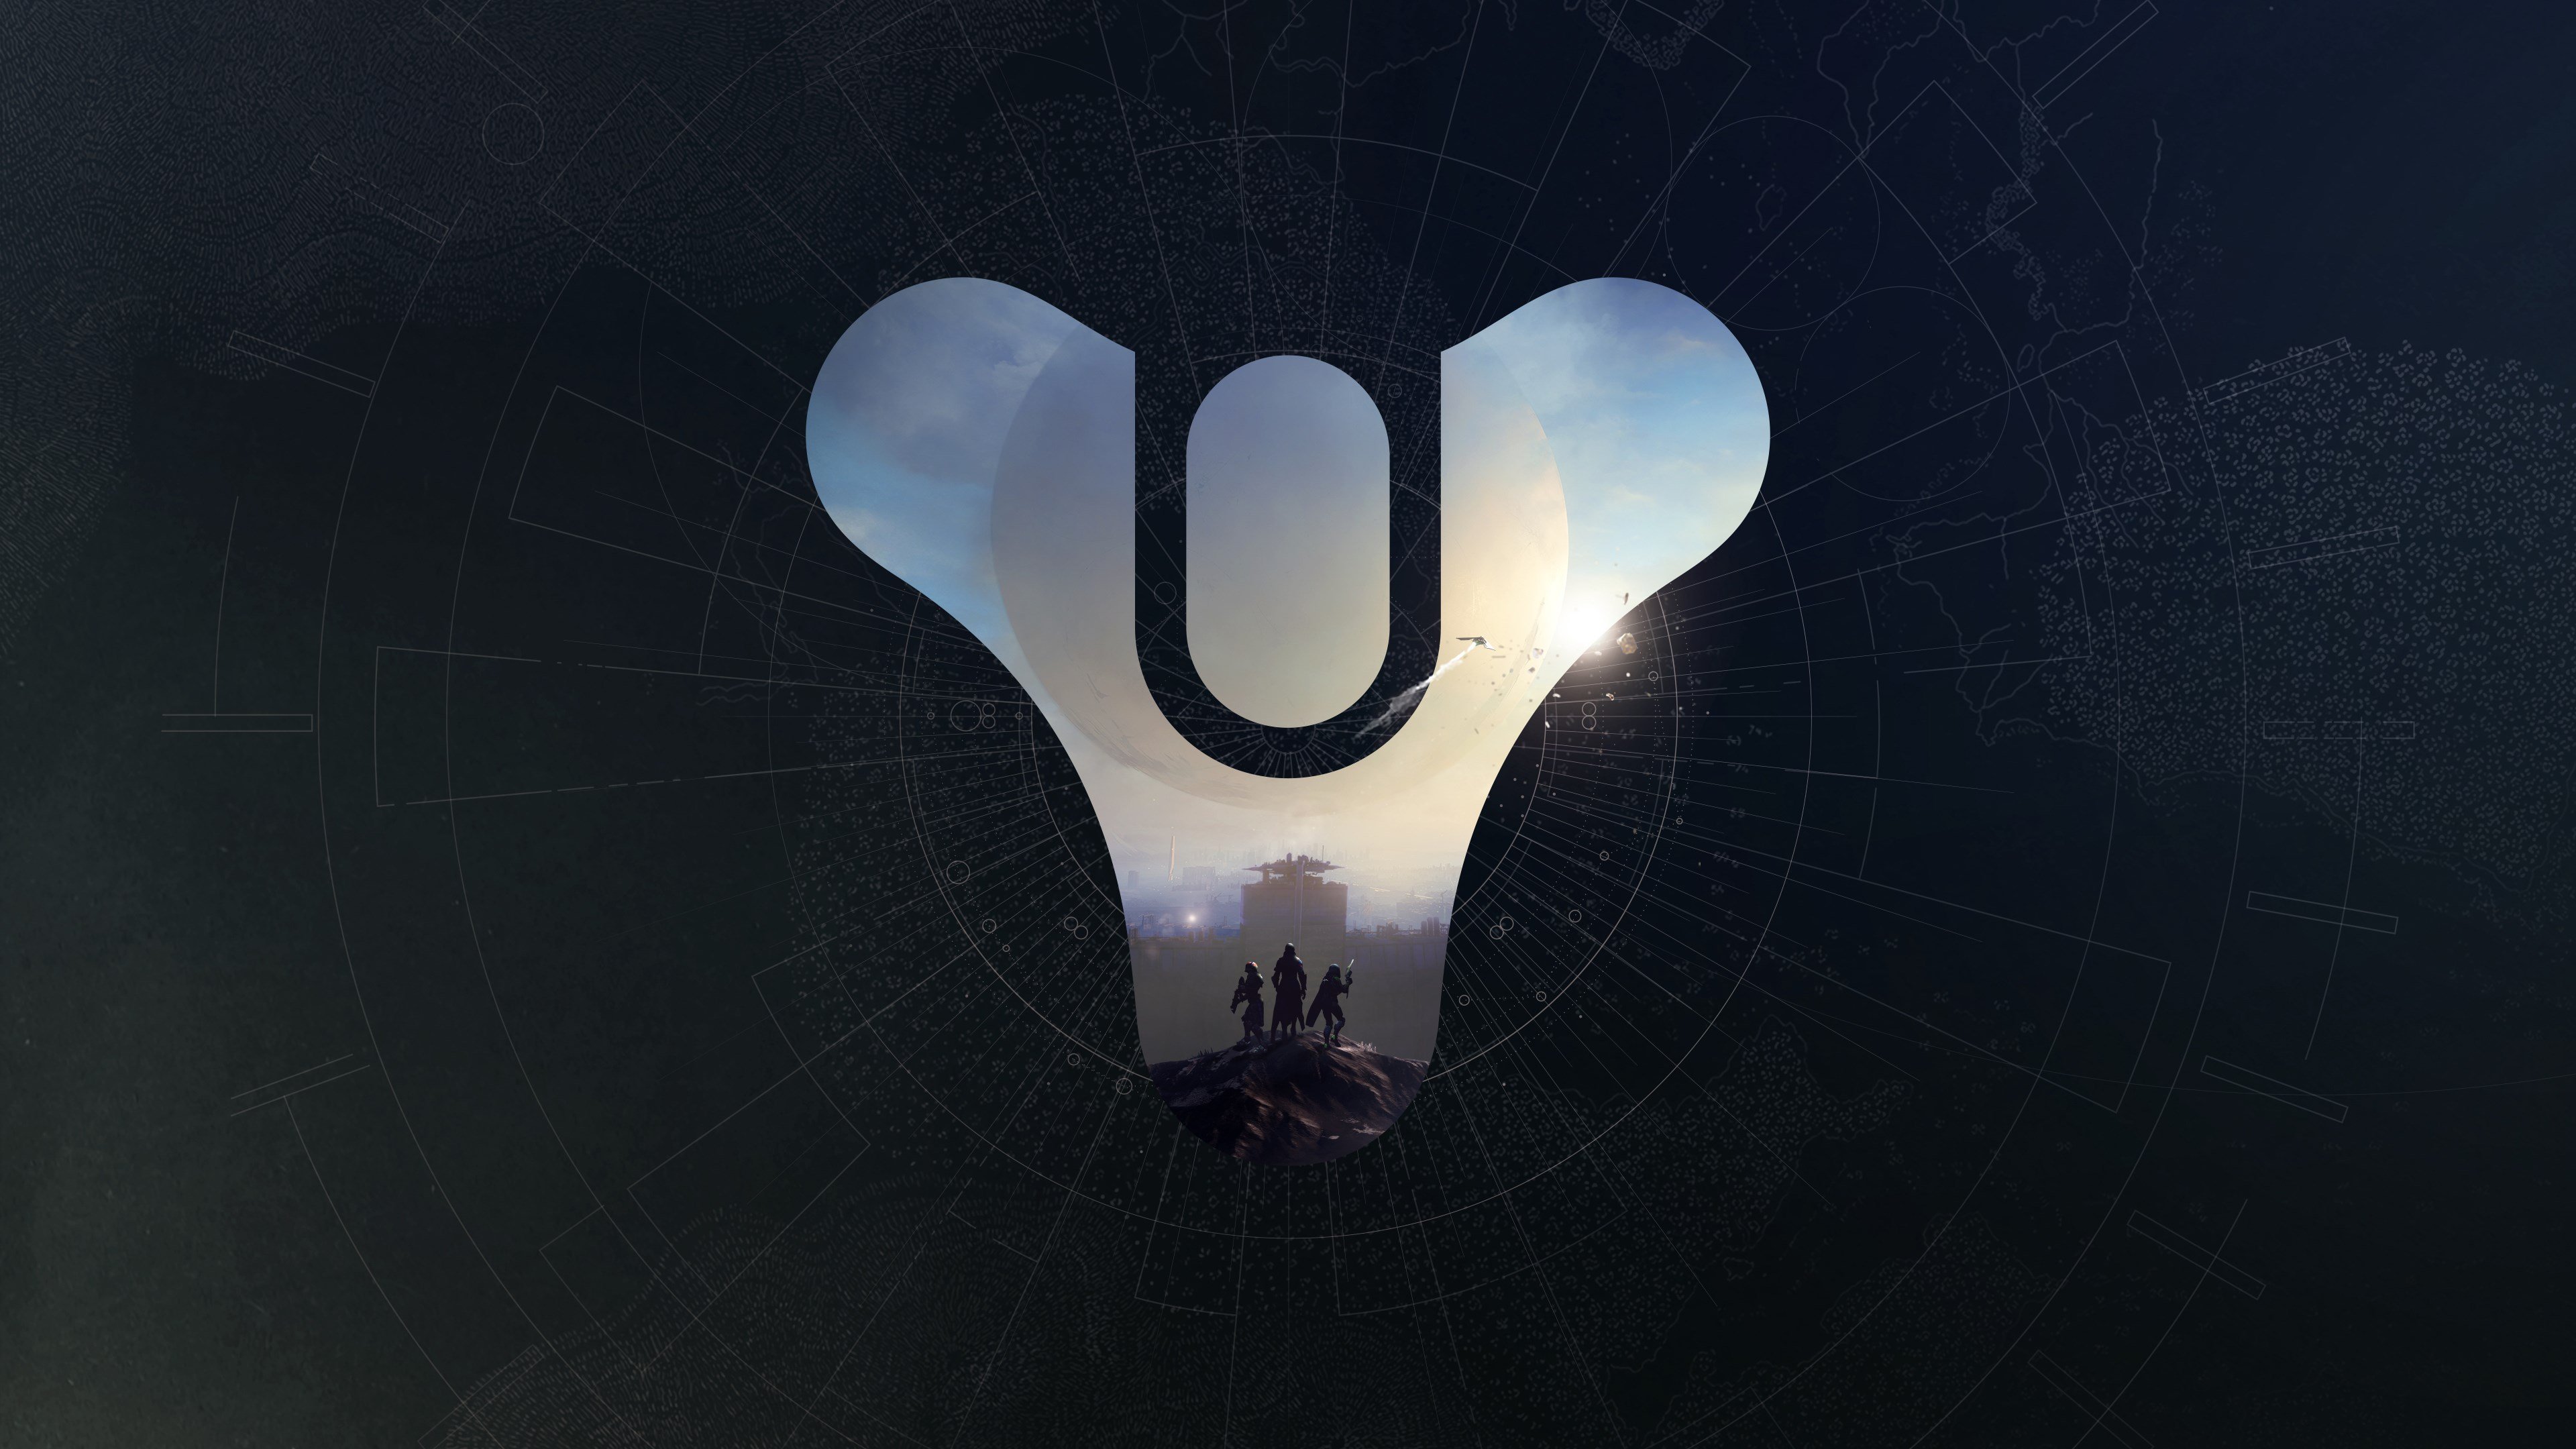 Destiny 2 cover image